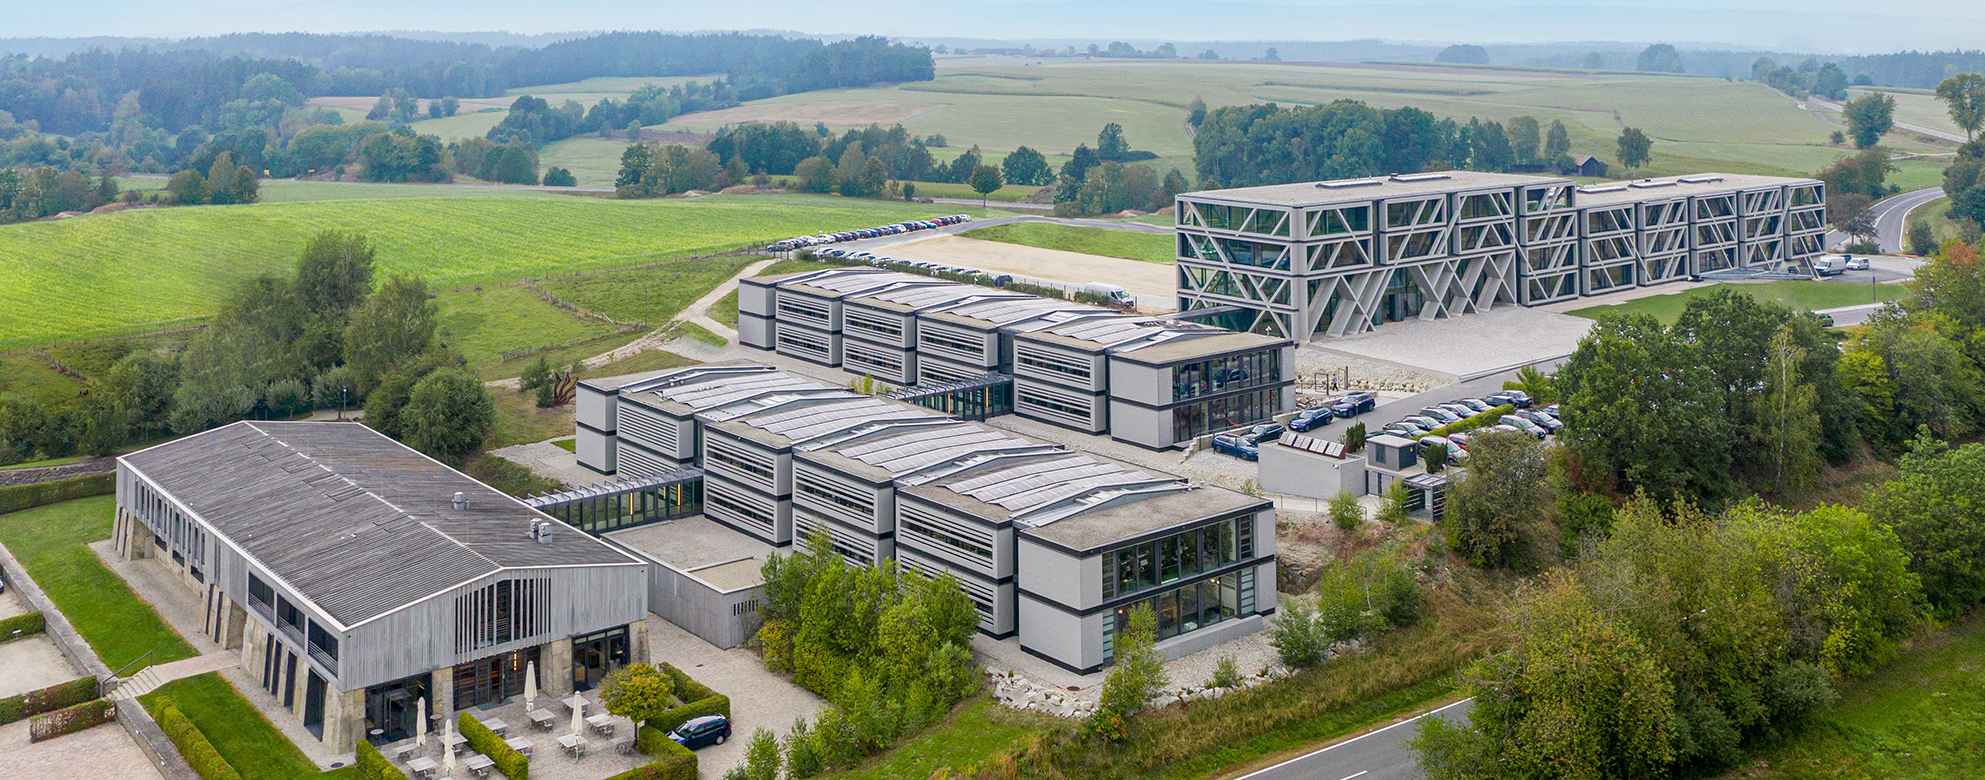 IGZ am Hauptsitz in Falkenberg, Perspektive von oben über alle Gebäude